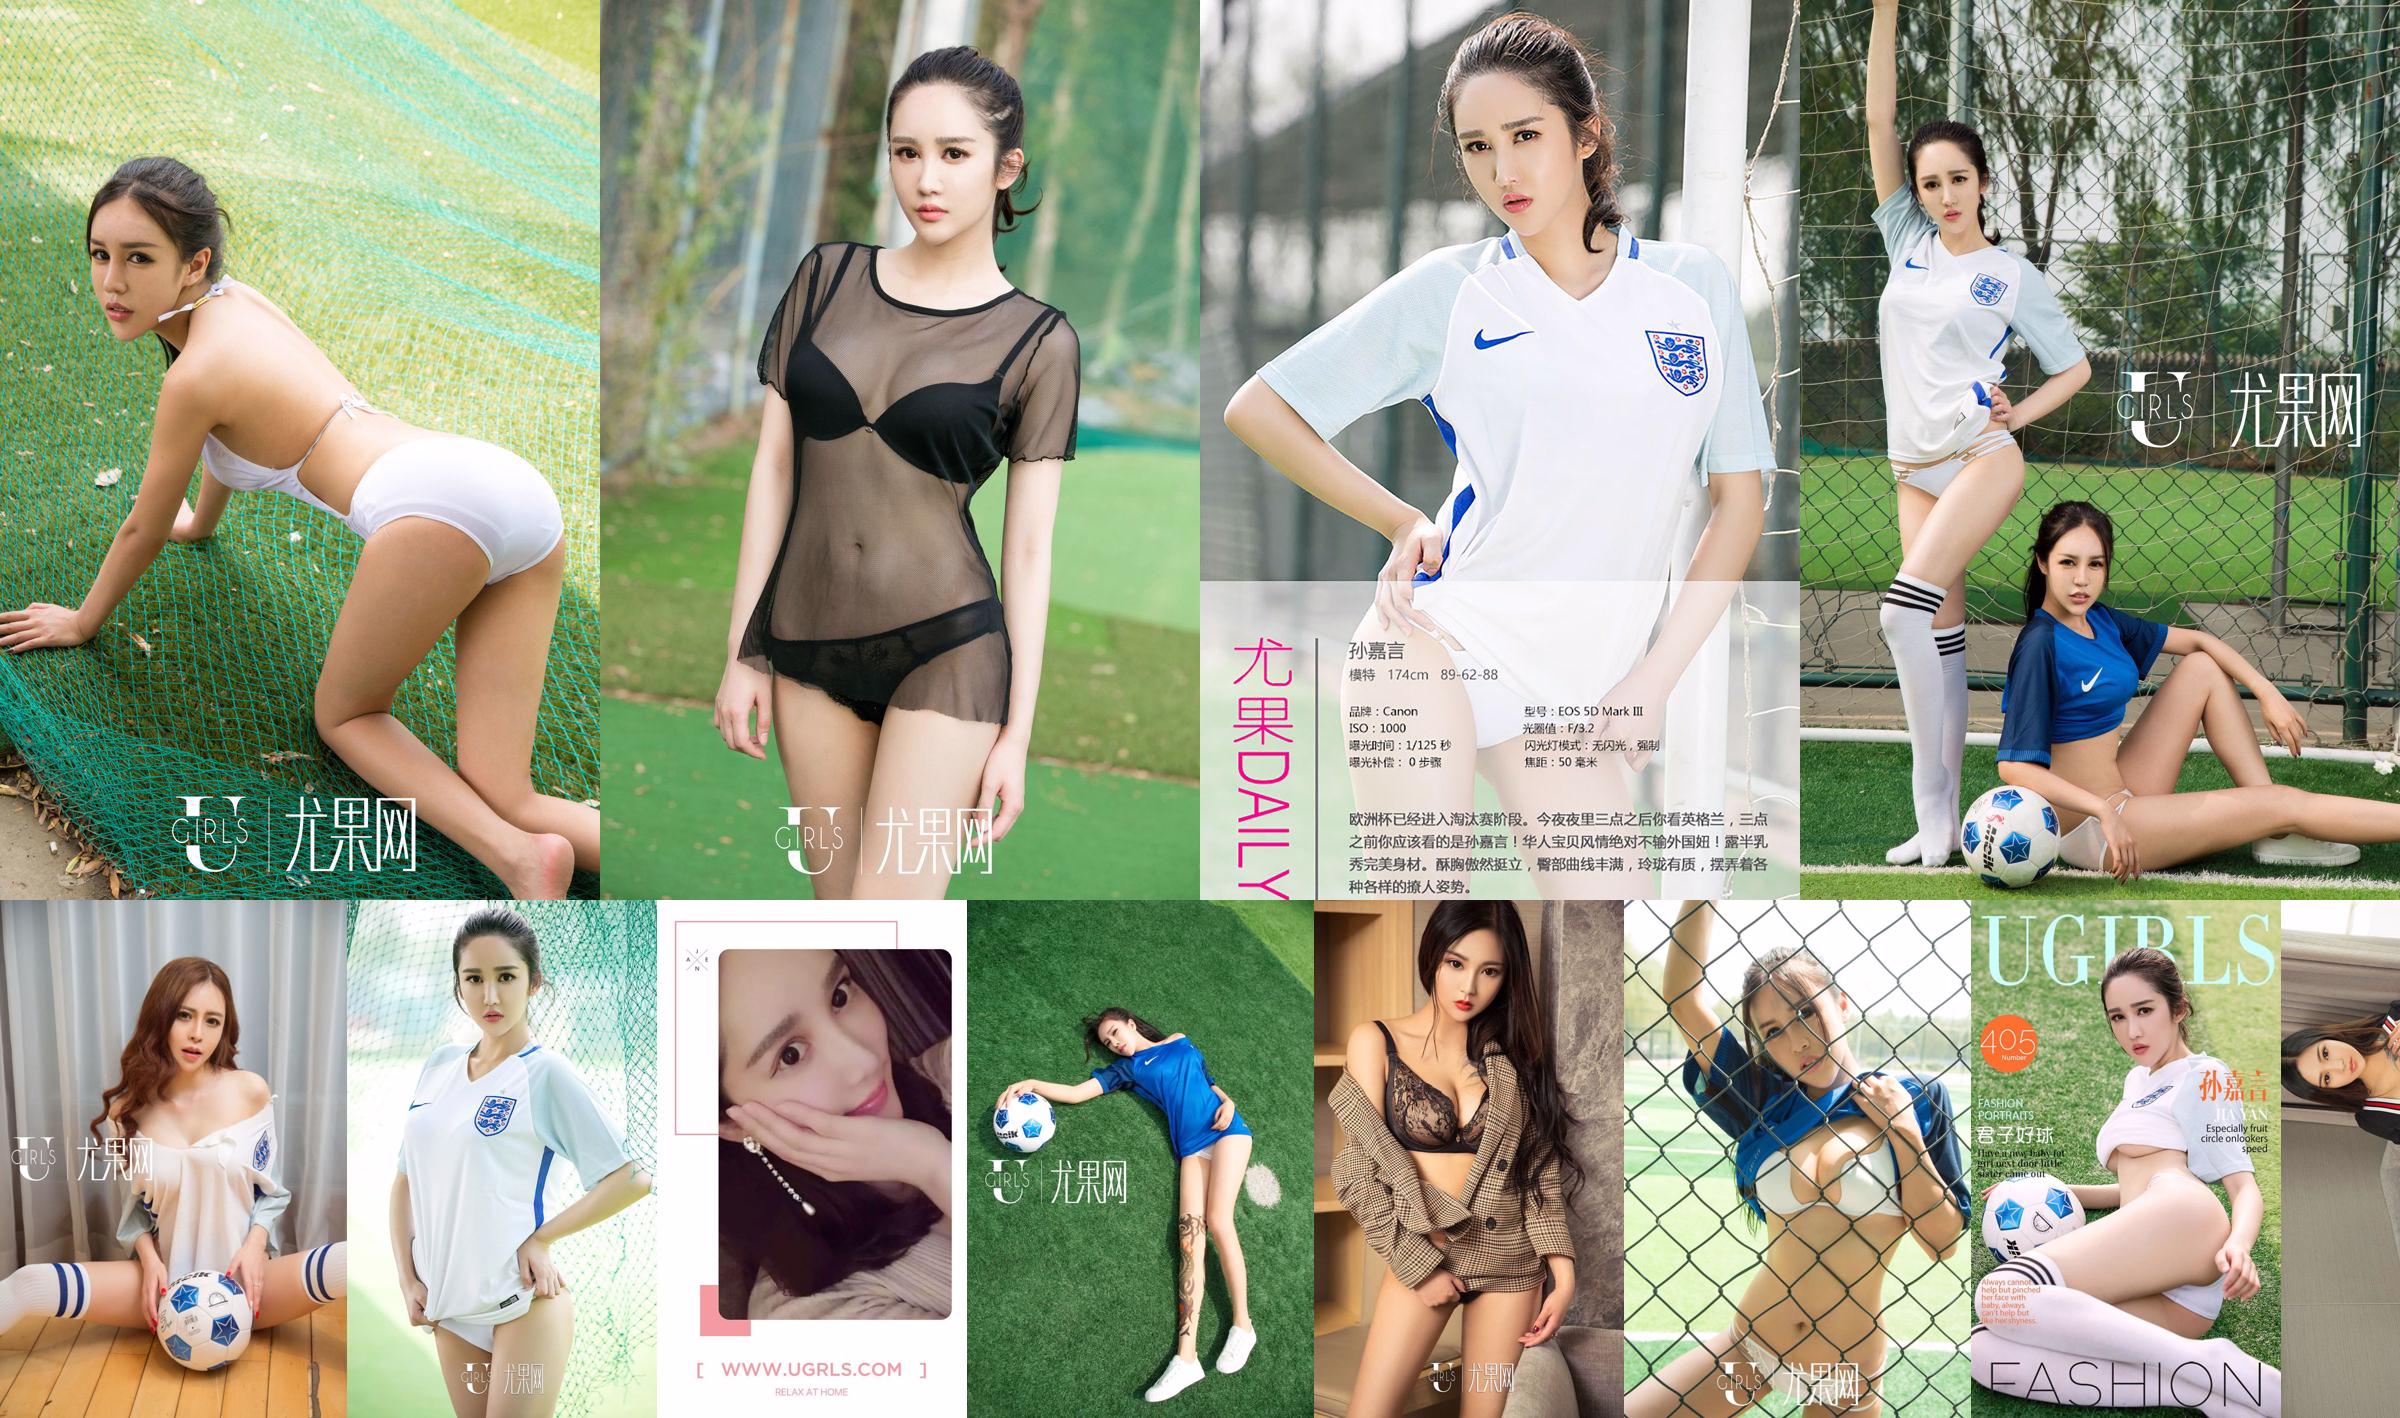 Sun Jiayan/Little Wisteria/Jin Xin/Li Yaying/Chun Jiao "Football Baby" [Ugirls] T019 No.722dff Page 4